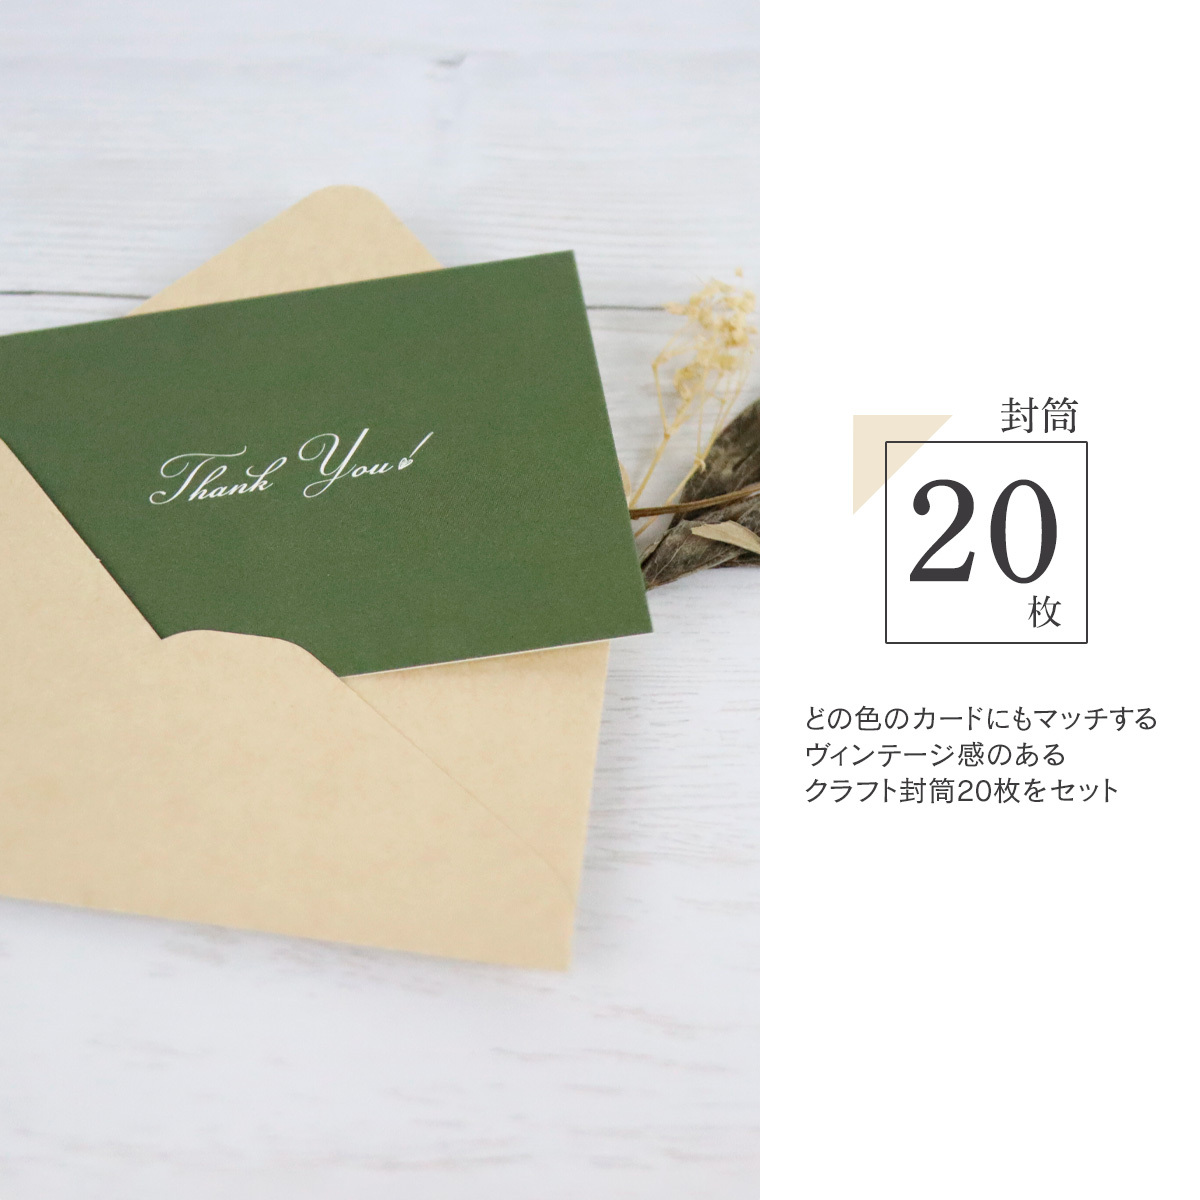 メッセージカード 名刺サイズ シンプル 40枚 & 封筒 20枚 セット 